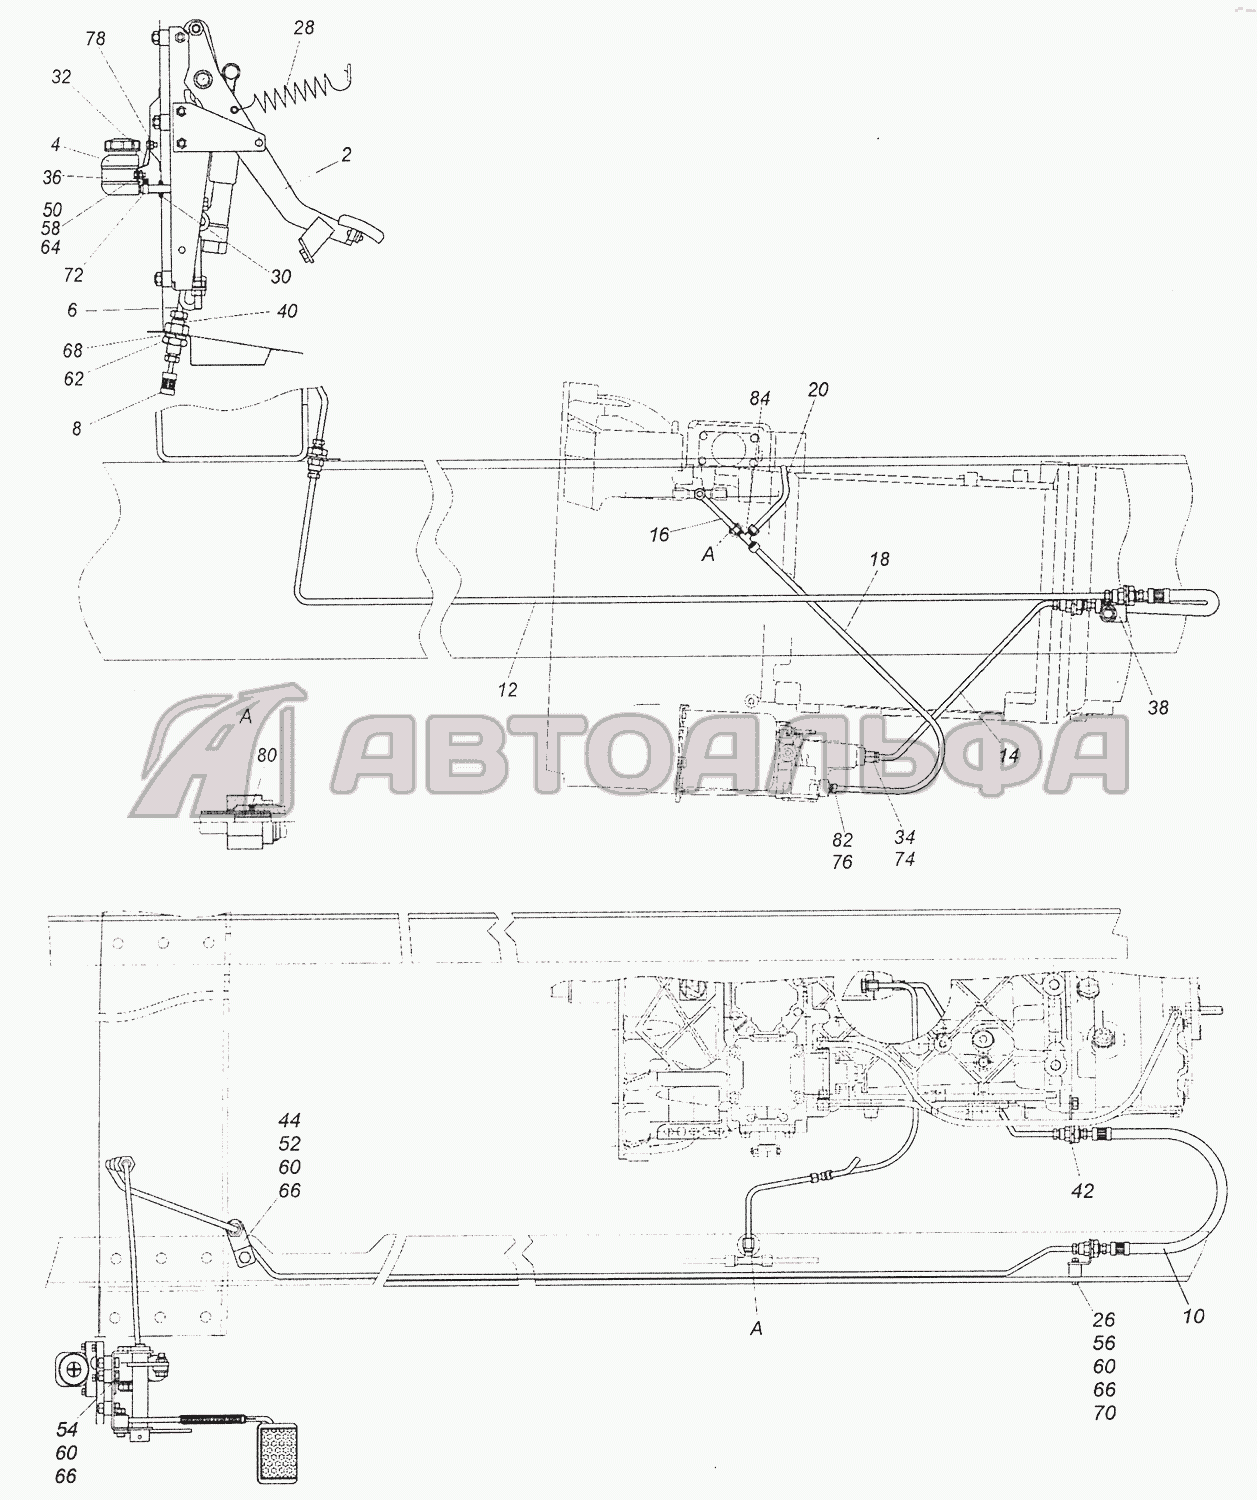 5460-1600006-19 Установка педали и привода выключения сцепления КАМАЗ-6520 (Euro-4), каталог 2012 г.